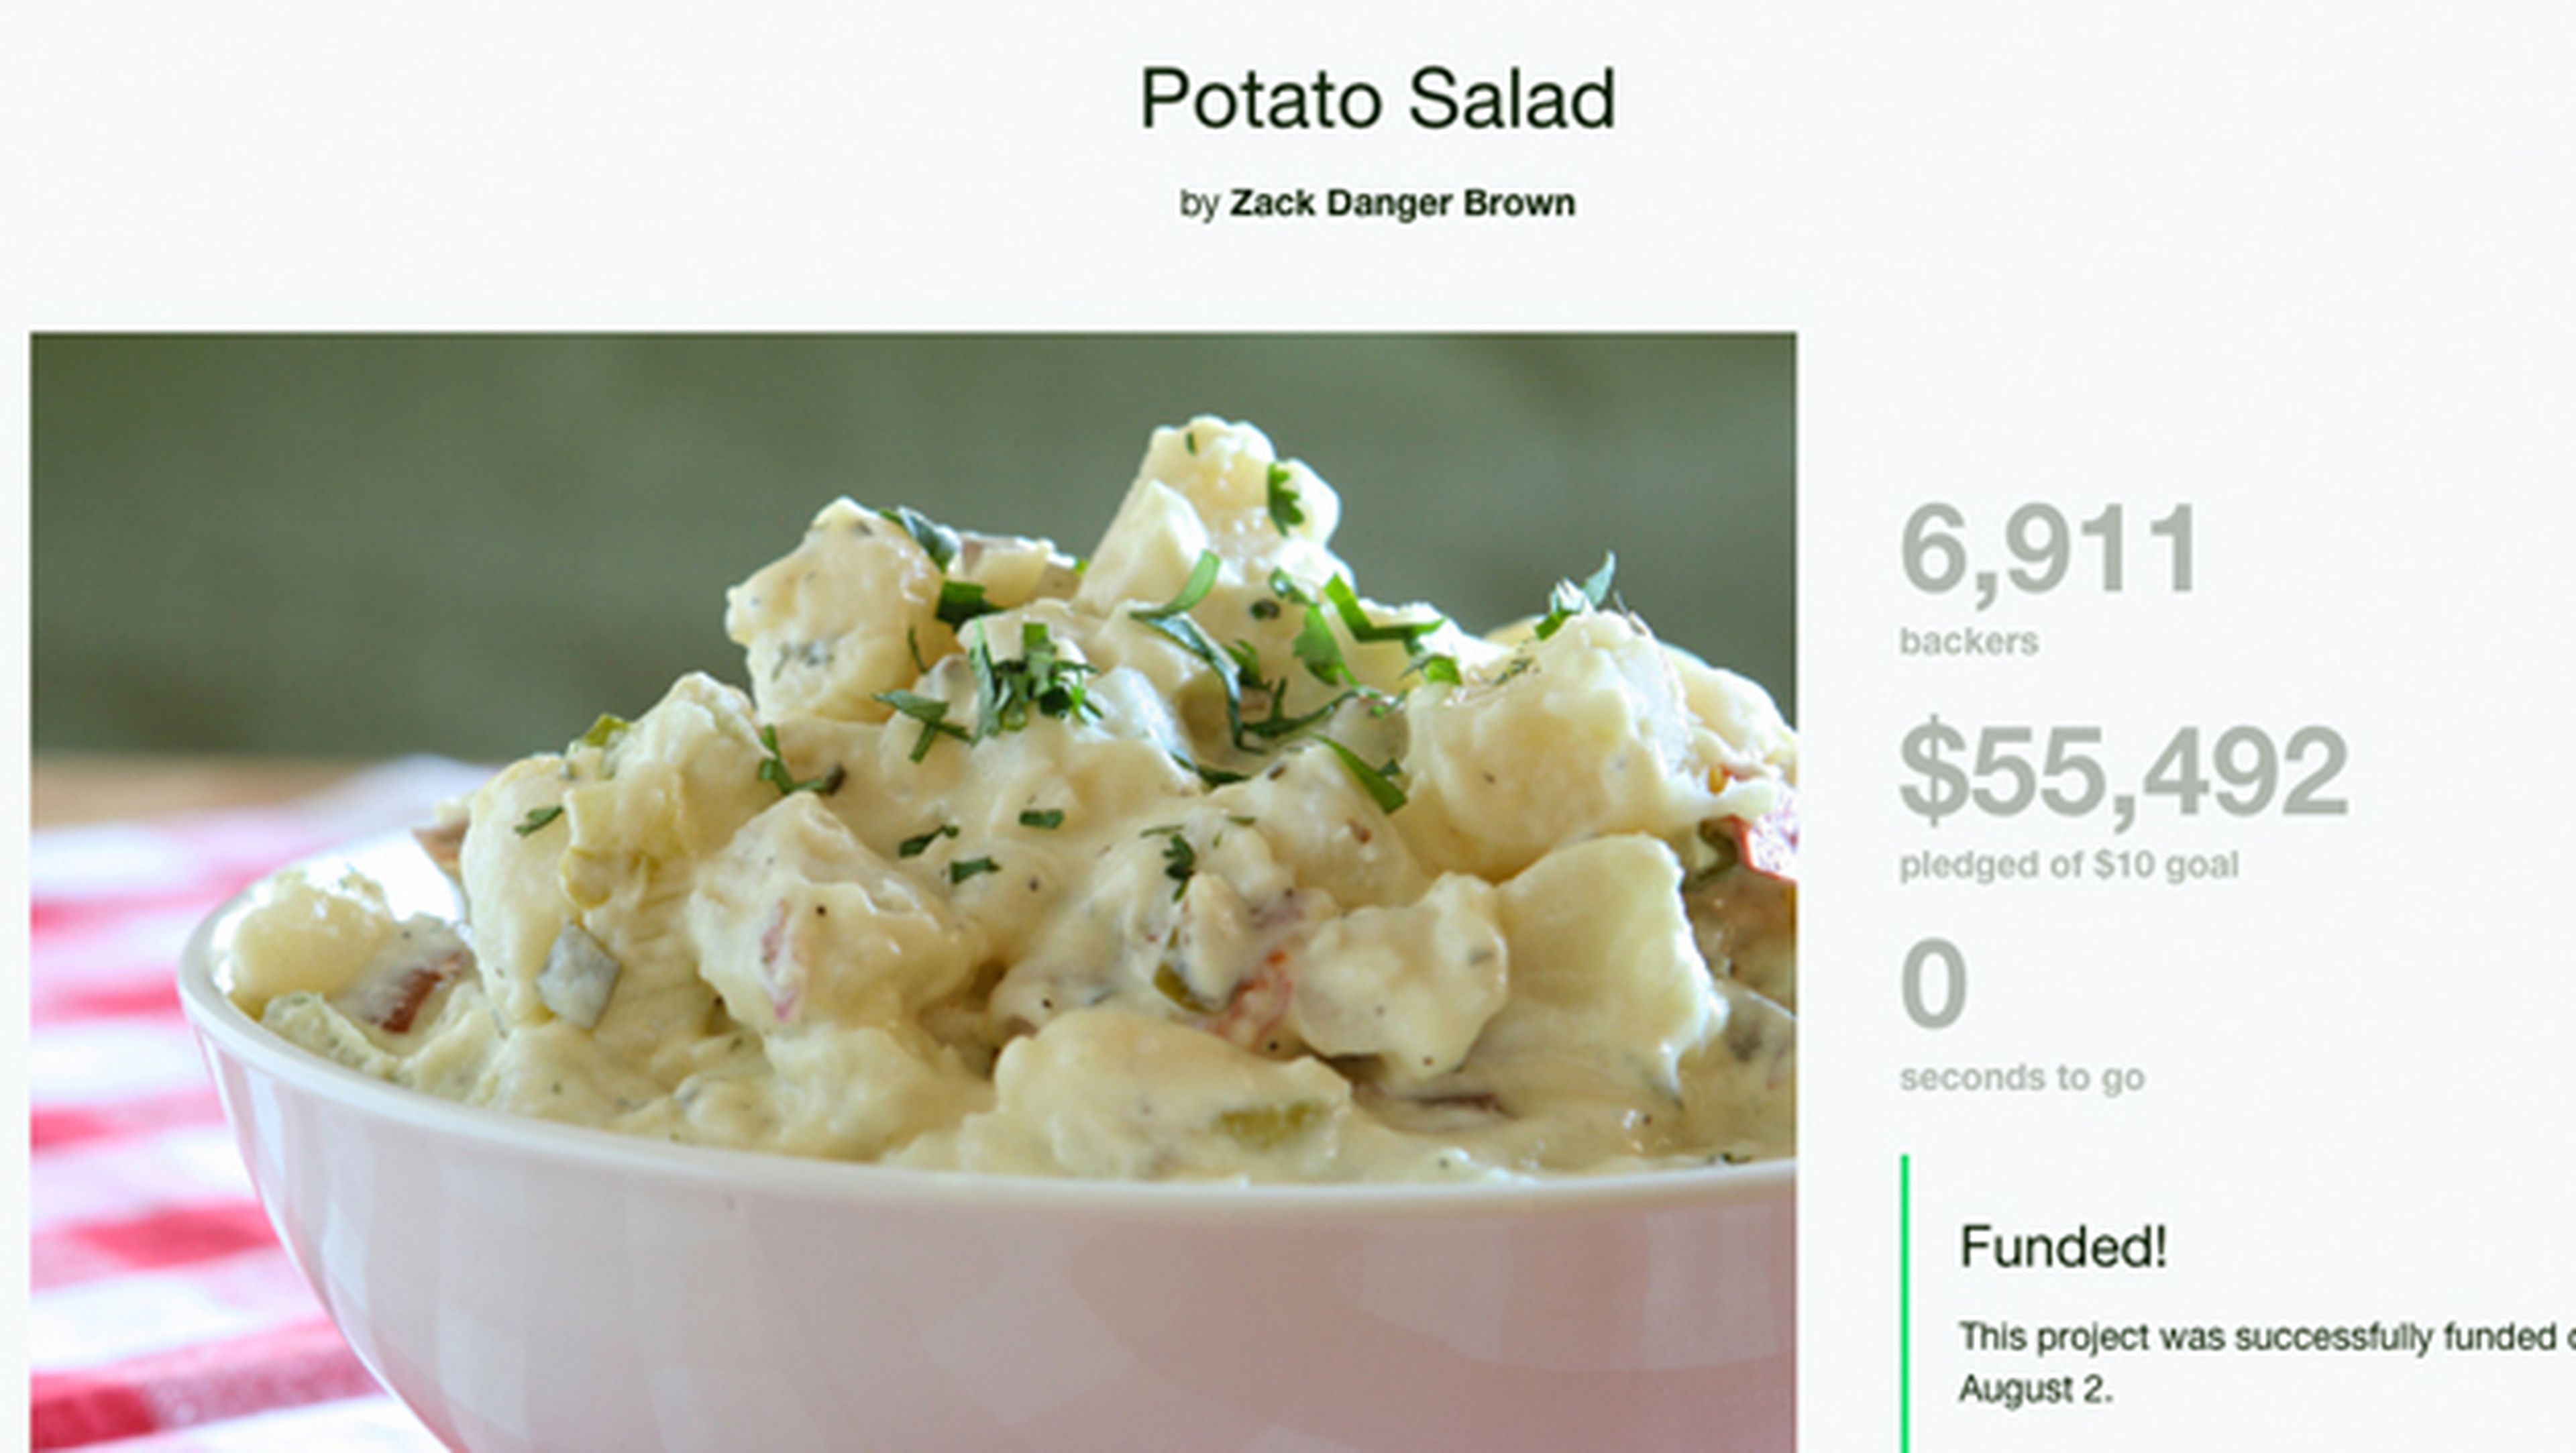 Una ensalada de patata que vale miles de dólares